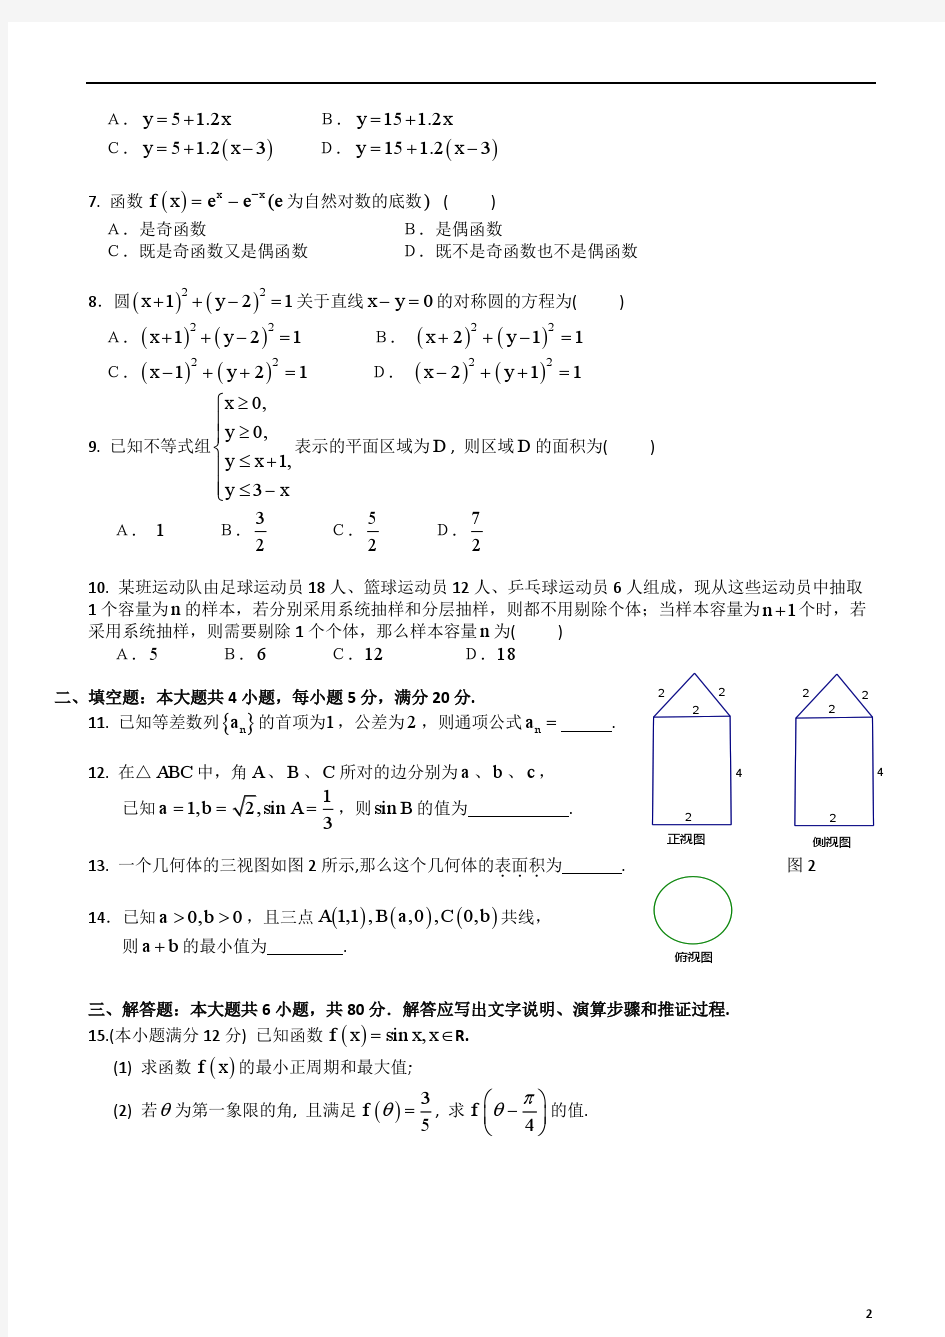 2009-2014年度上学期广州市高中二年级数学学生学业水平测试试题及答案汇编